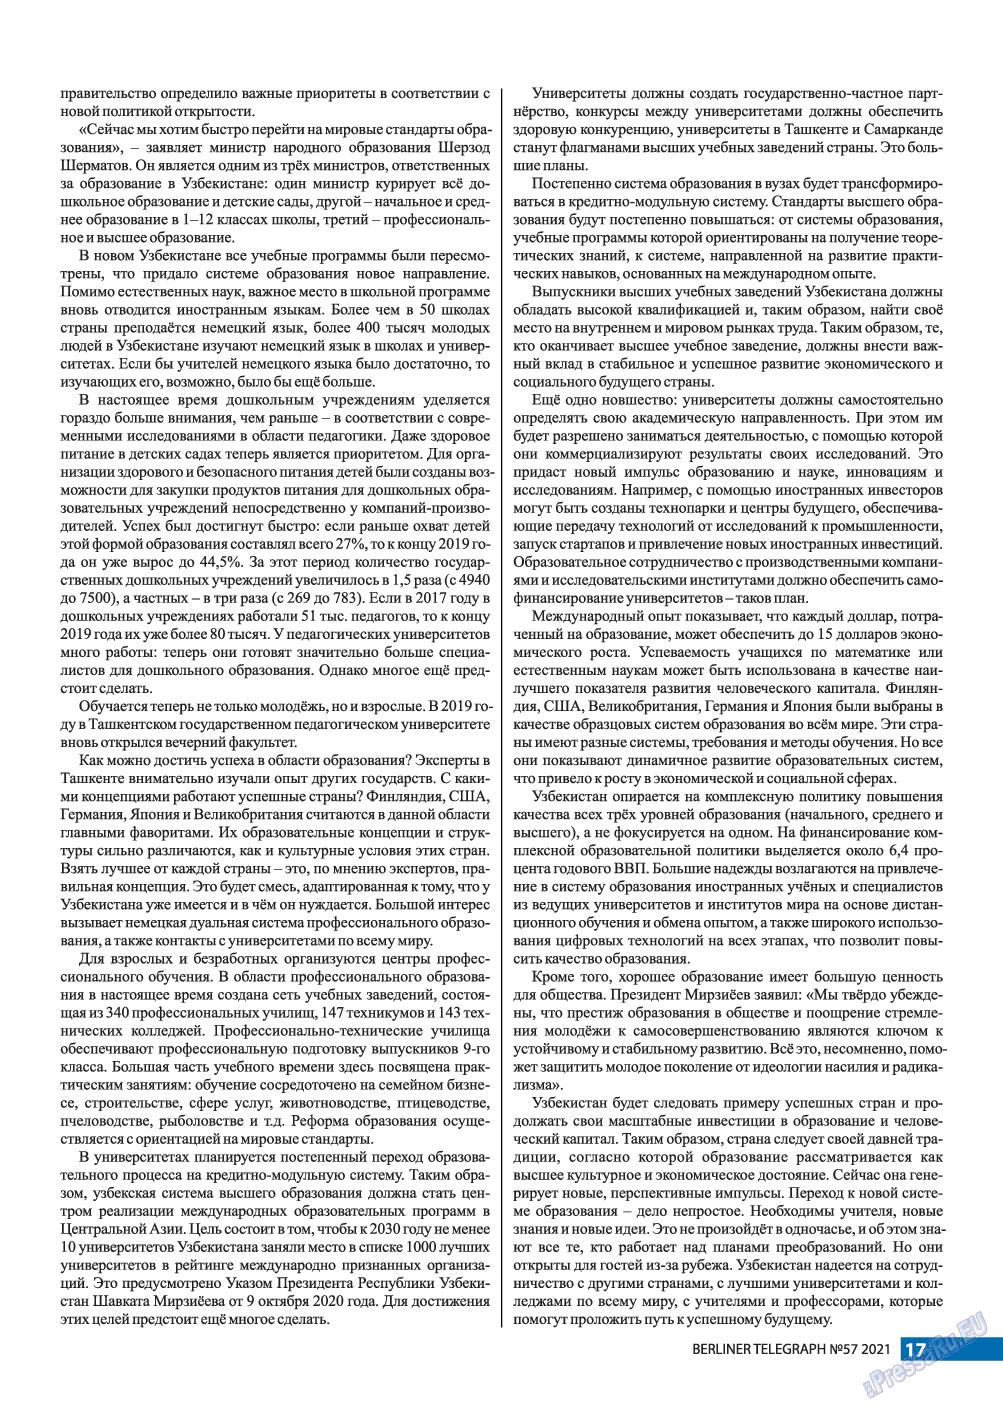 Берлинский телеграф, журнал. 2021 №57 стр.17